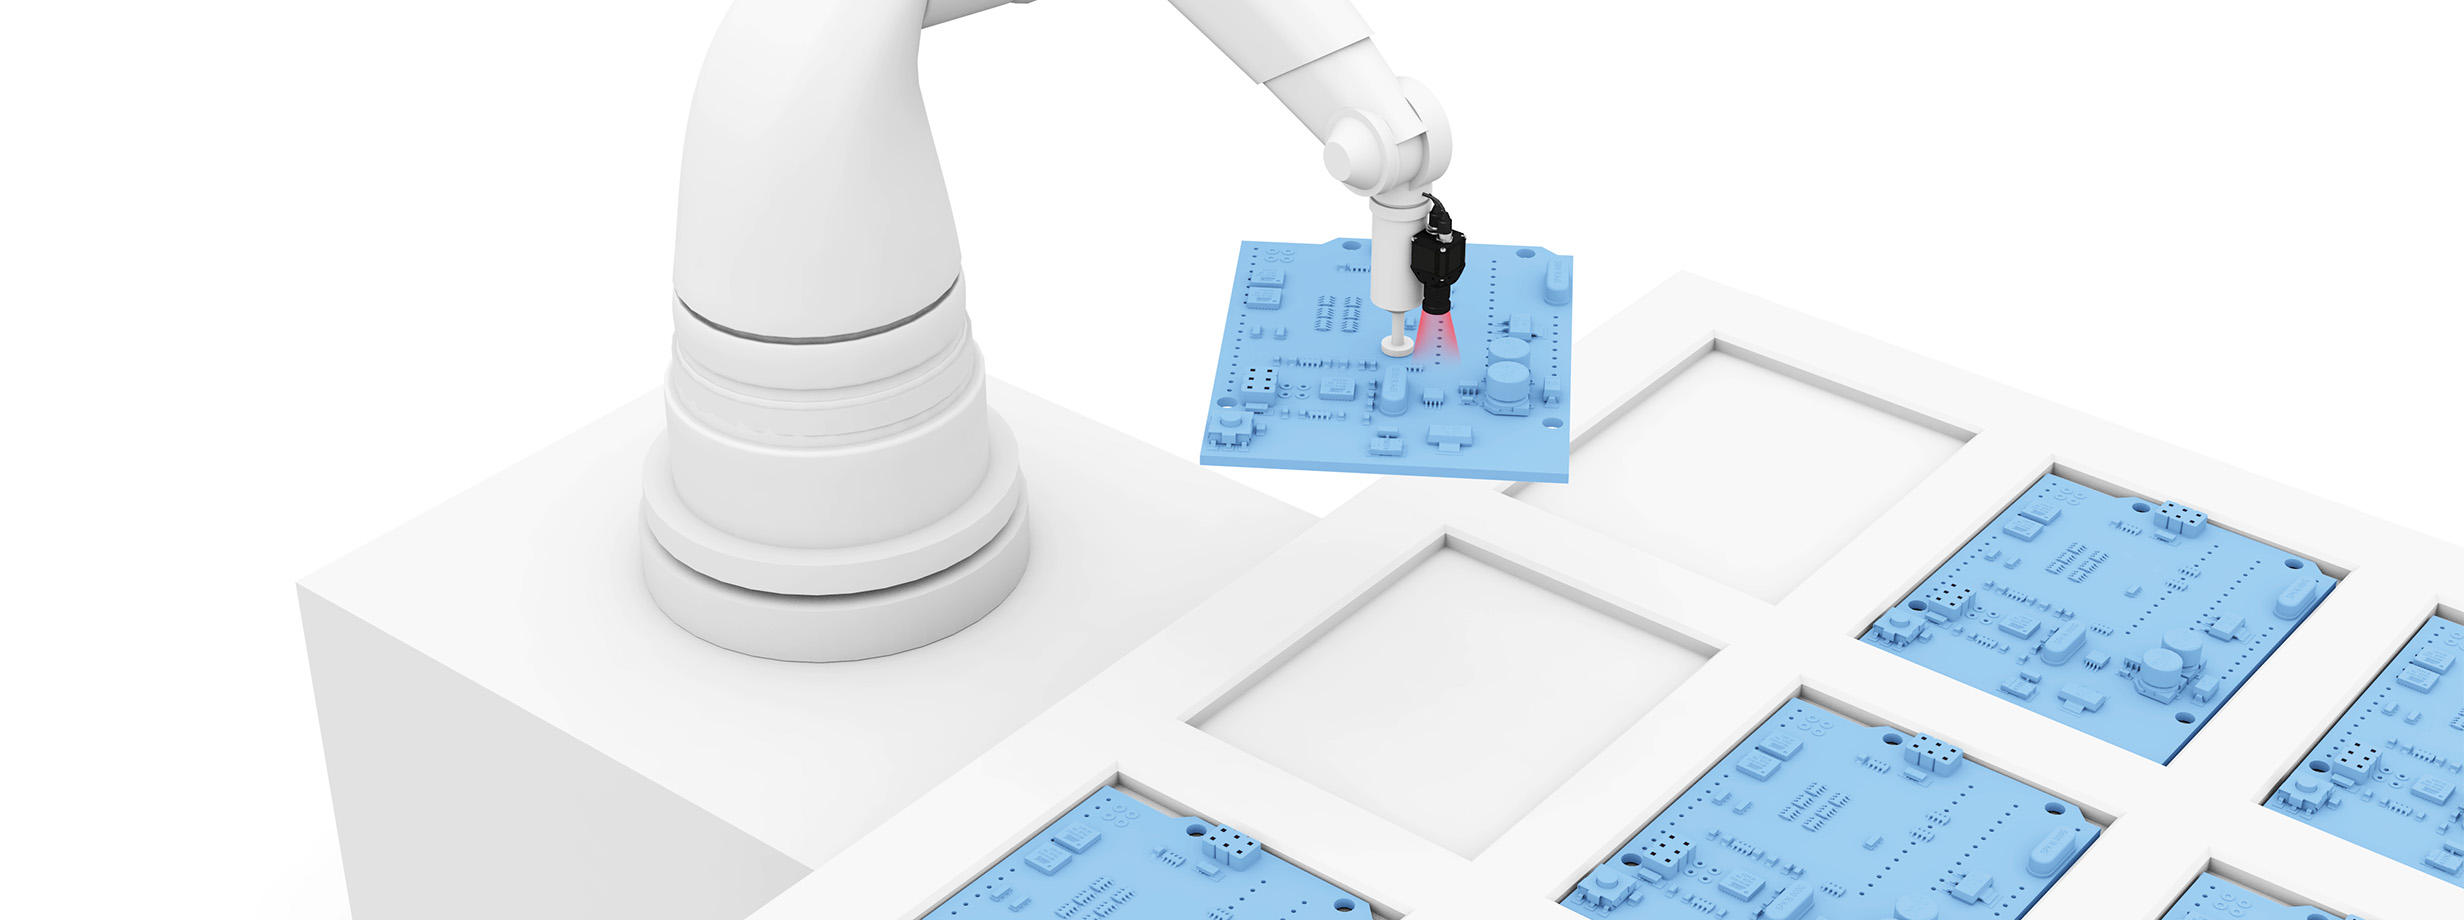 Control preciso de robots en aplicaciones de recogida y colocación image